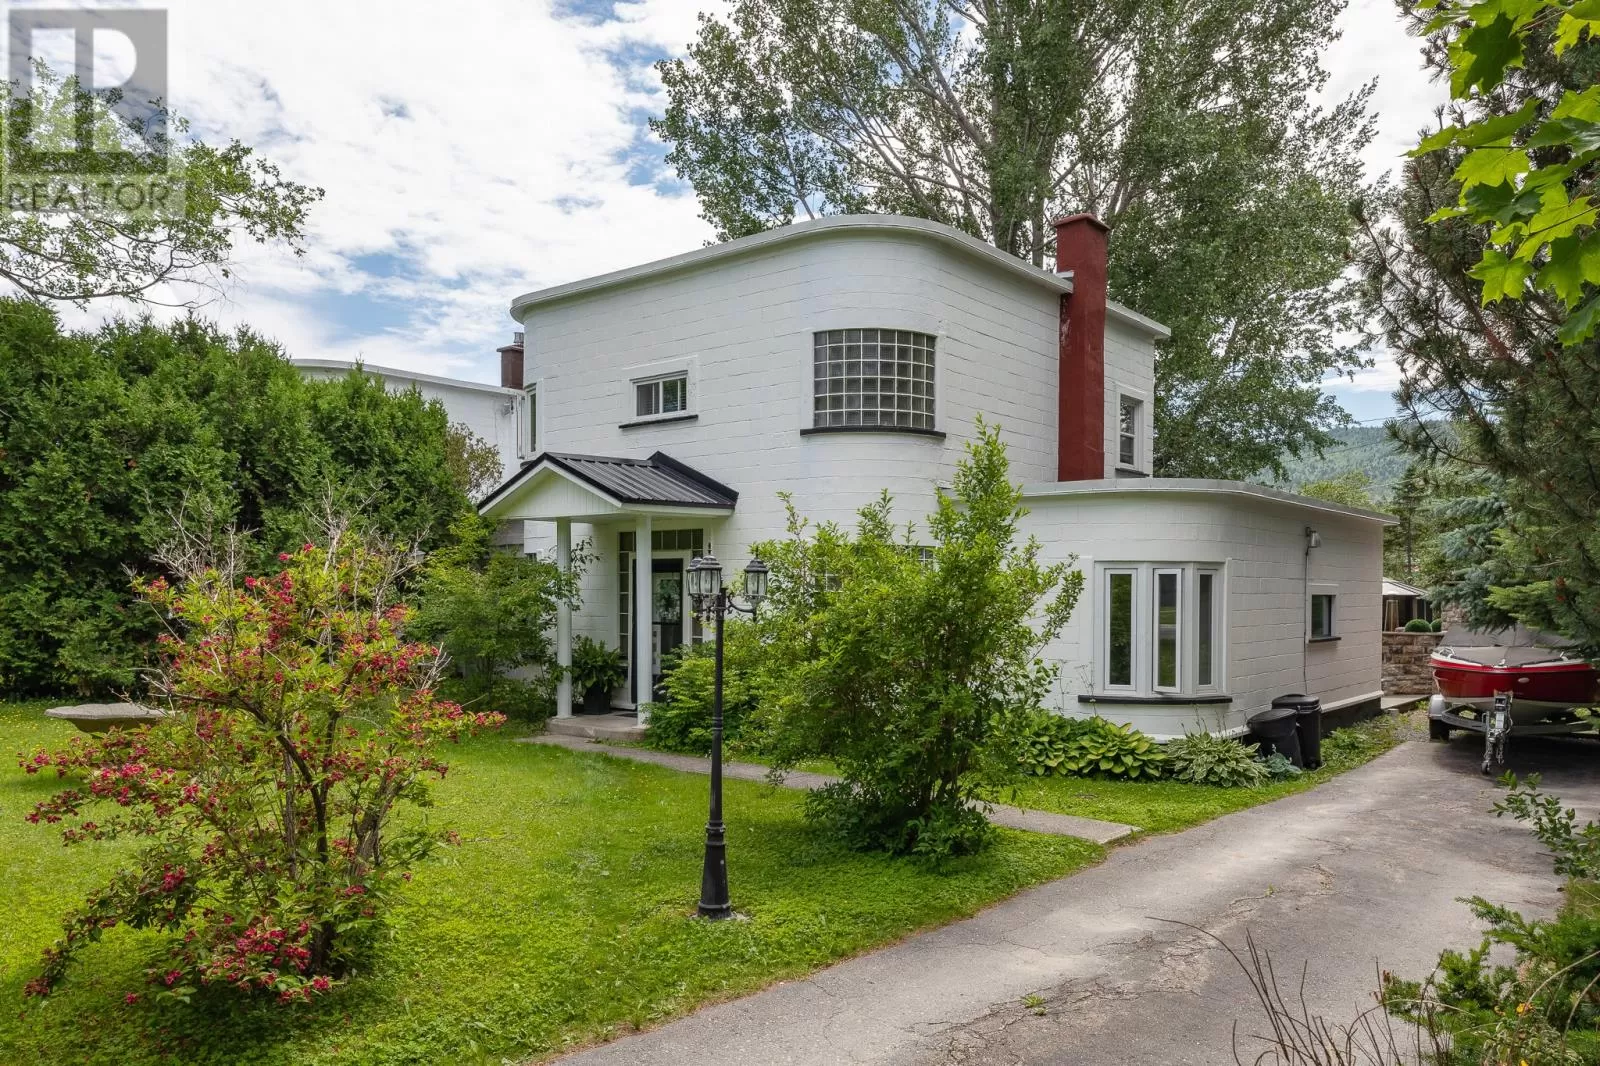 House for rent: 16 Marcelle Avenue, Corner Brook, Newfoundland & Labrador A2H 2V7